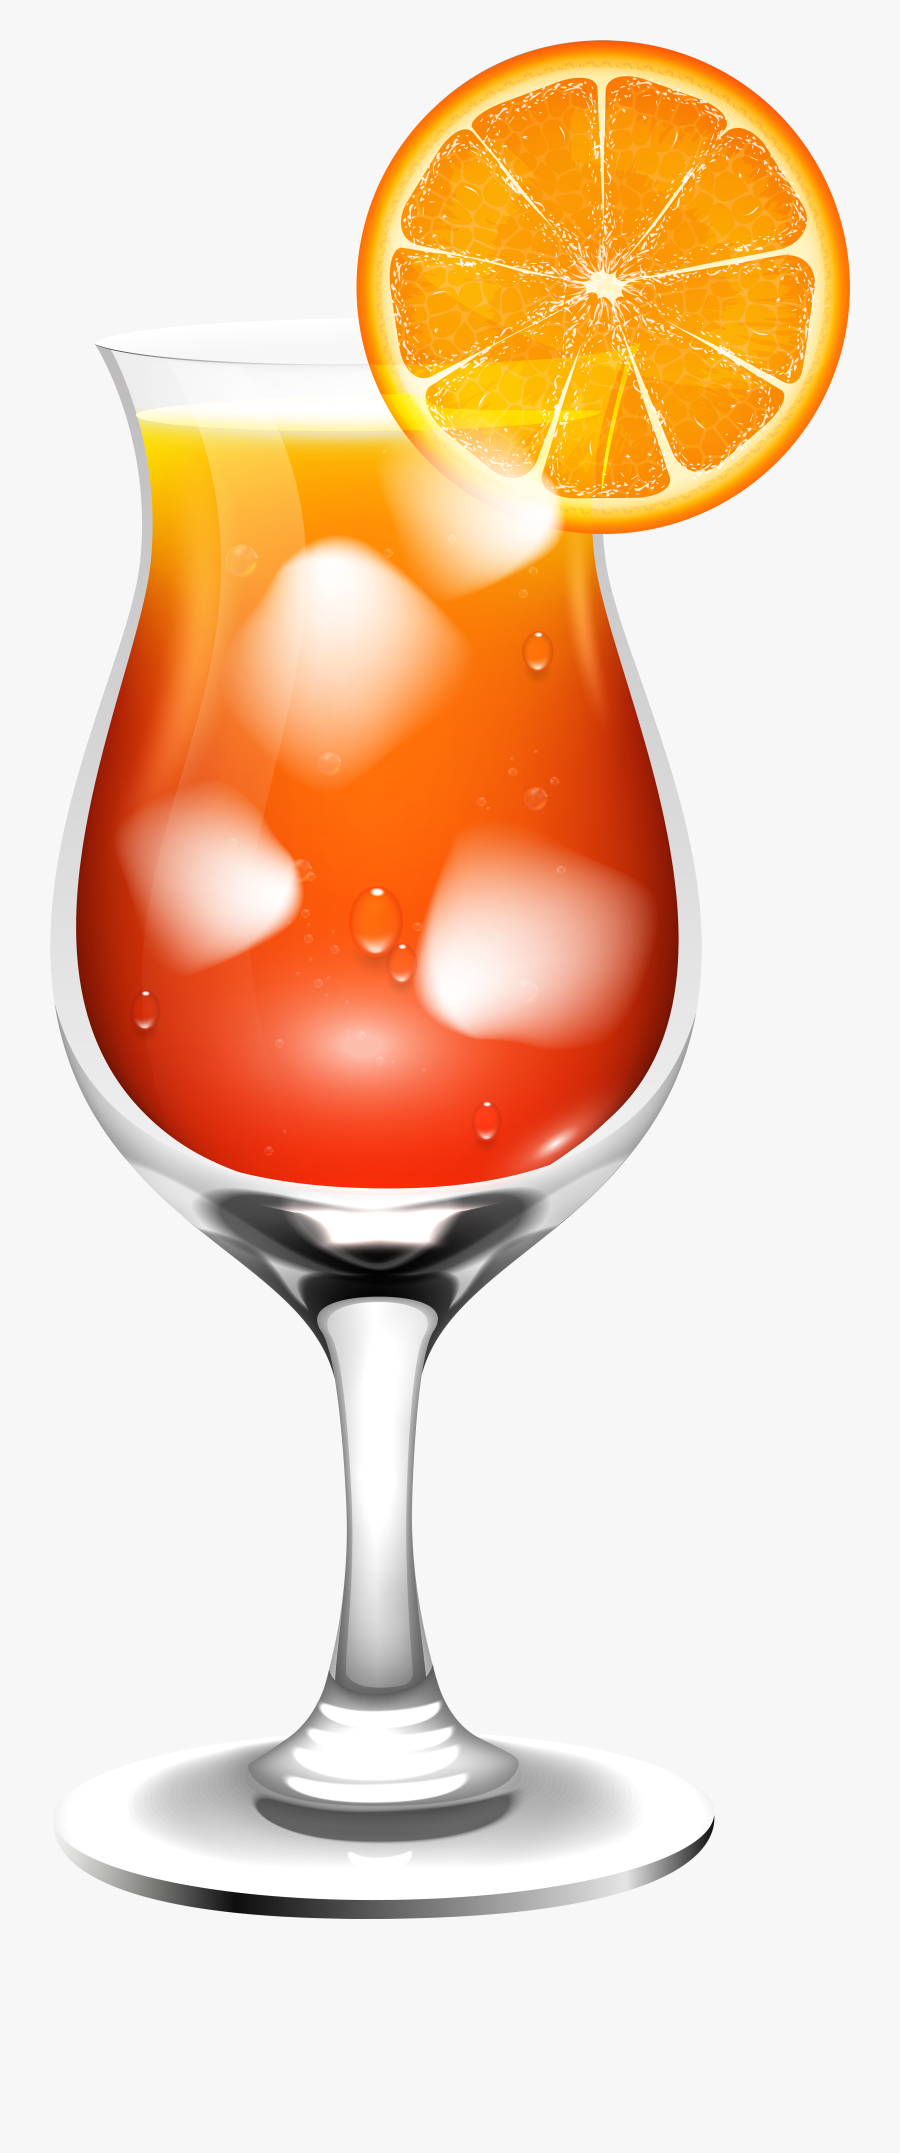 Orange Cocktail Transparent Png Clip Art Image - Transparent Background Drinks Clip Art, Transparent Clipart